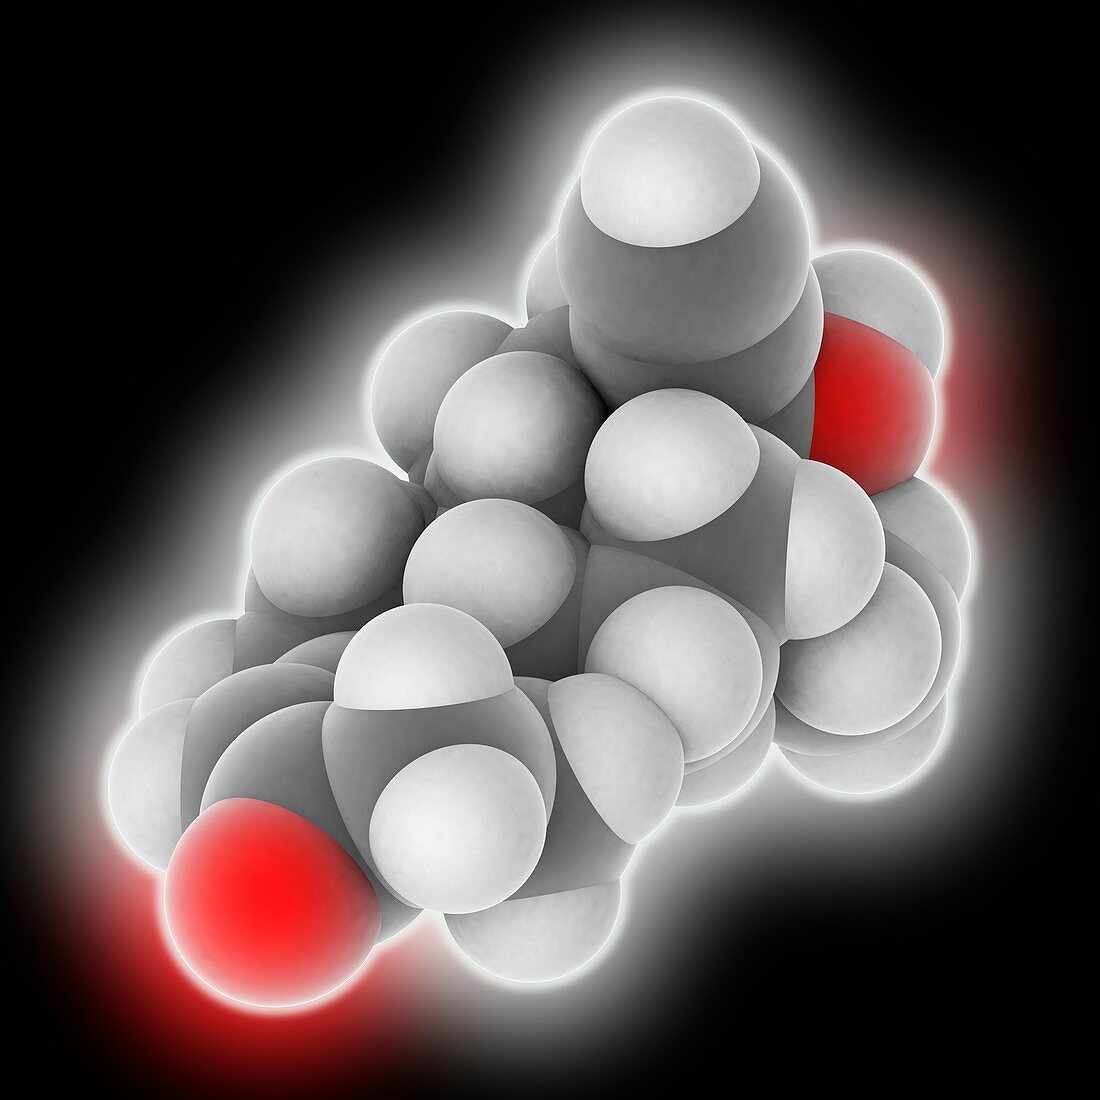 Levonorgestrel drug molecule